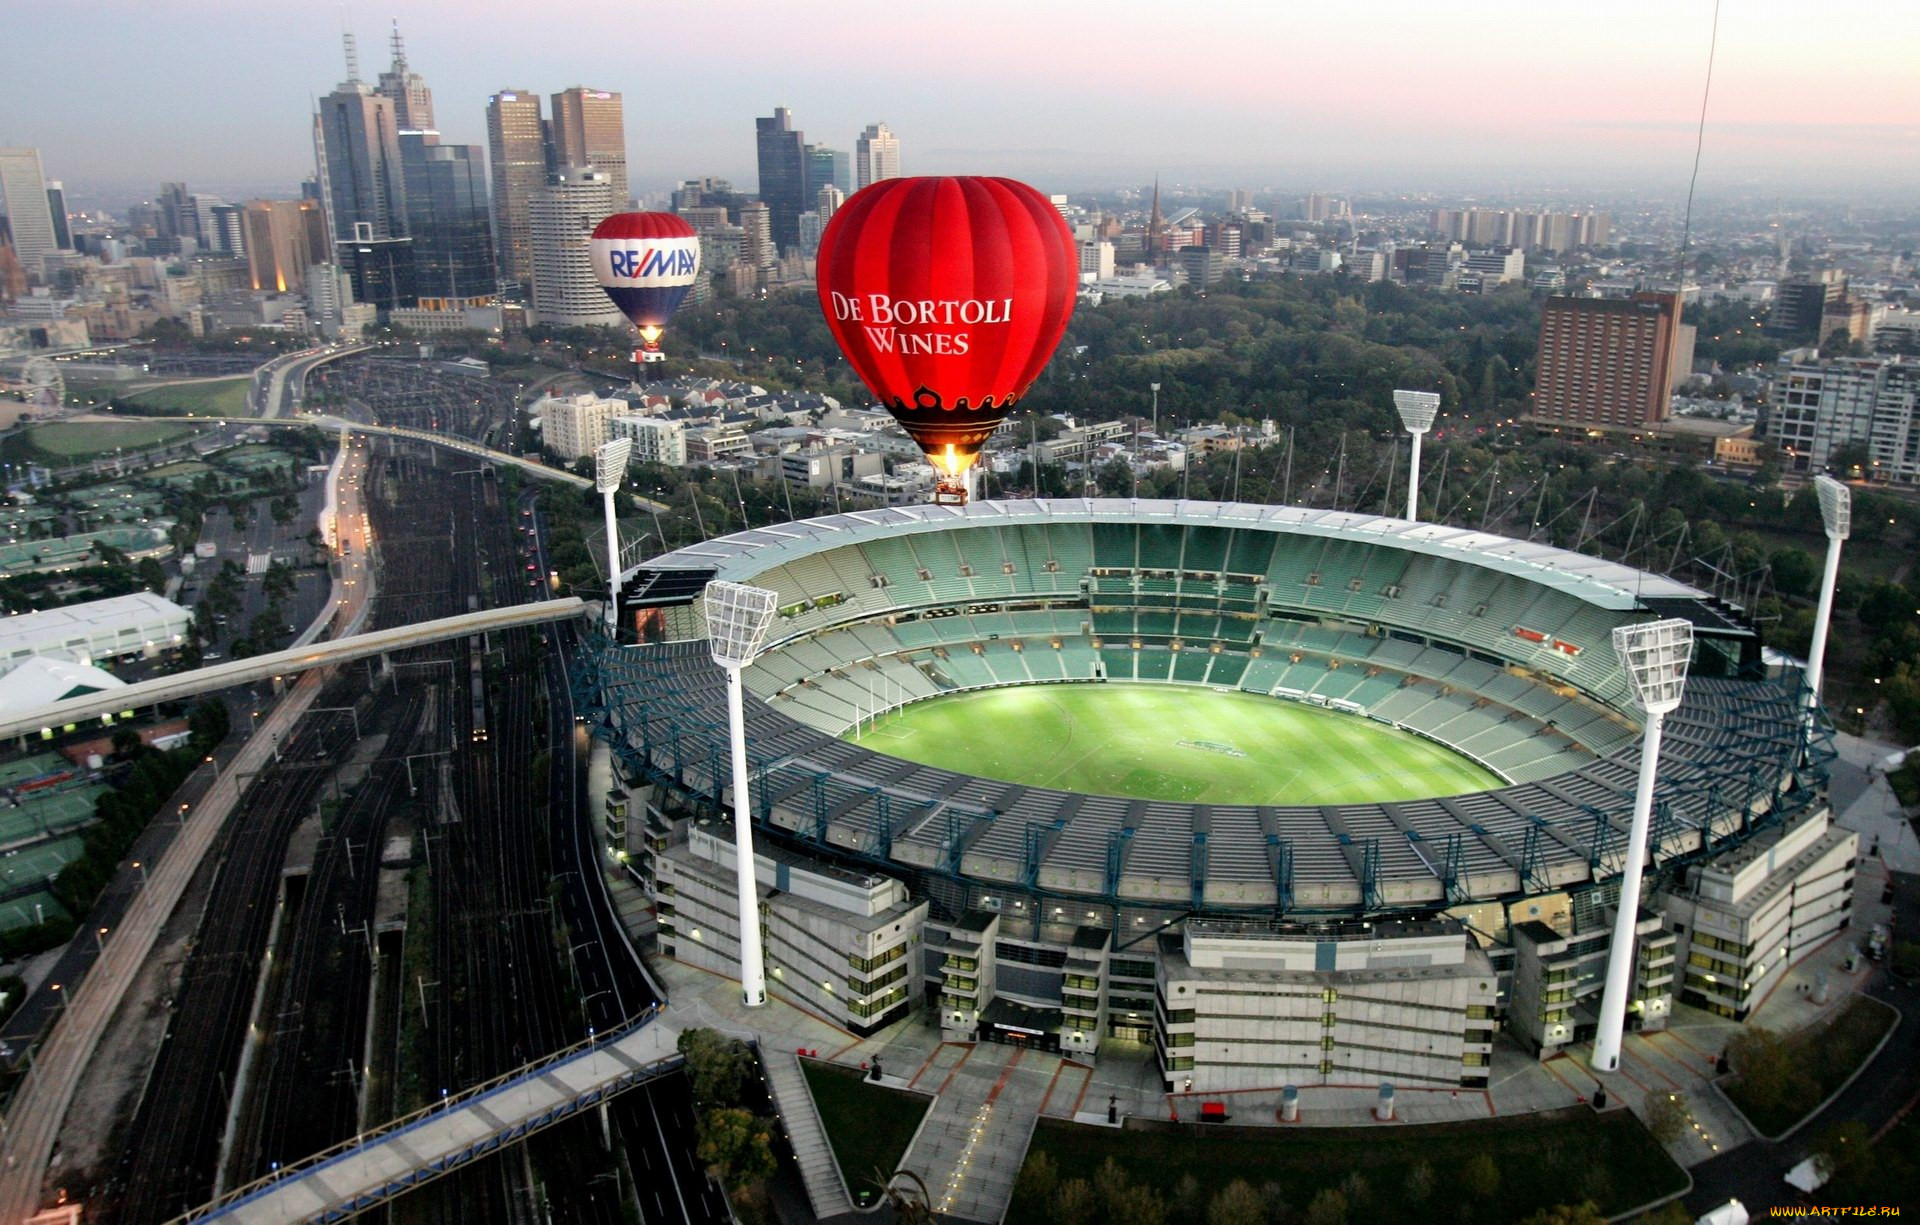 Крикет граунд. Мельбурн стадион крикет. Мельбурн крикет Граунд Австралия. Мельбурн крикет Граунд стадион фото. Мельбурн стадион футбольный.